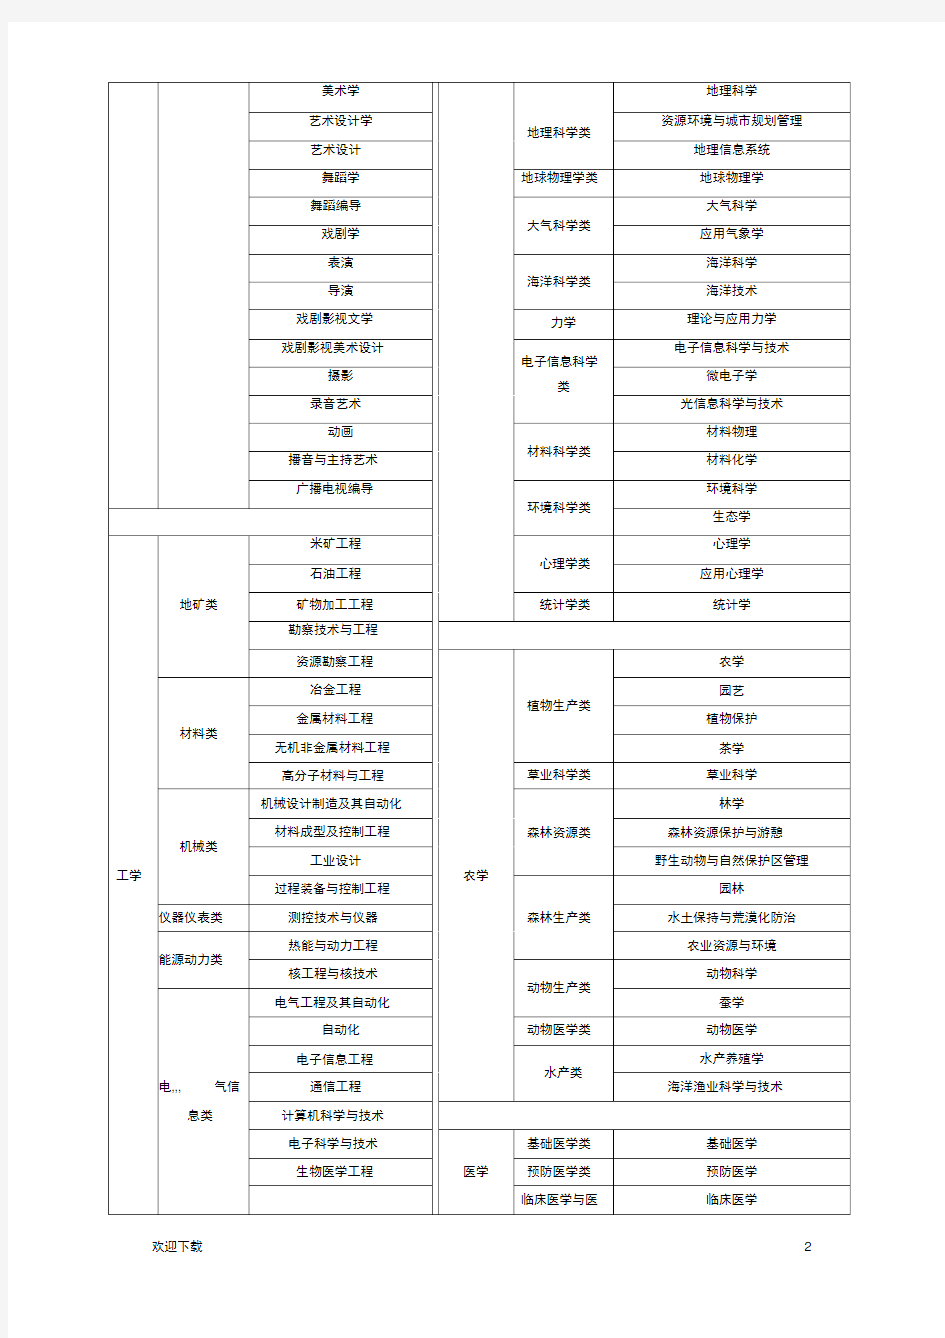 中国、美国大学专业分类表